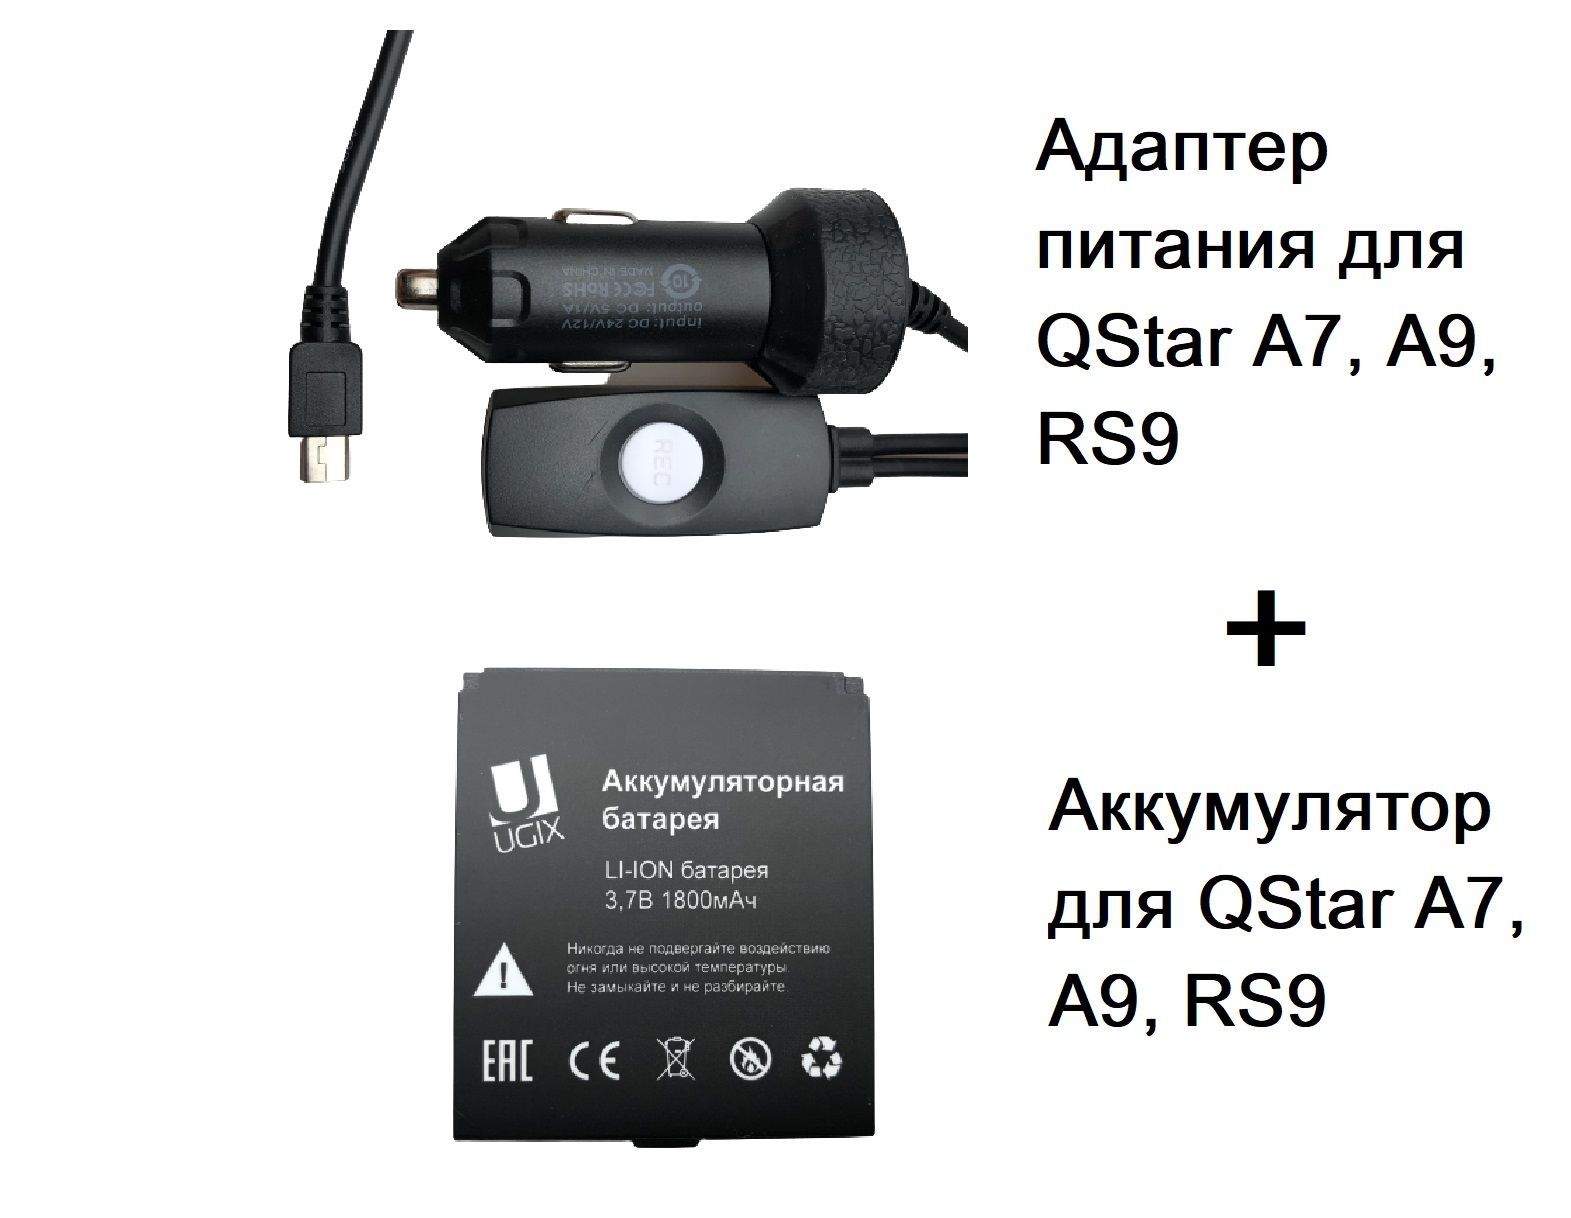 Регистратор rs. QSTAR видеорегистратор rs9.